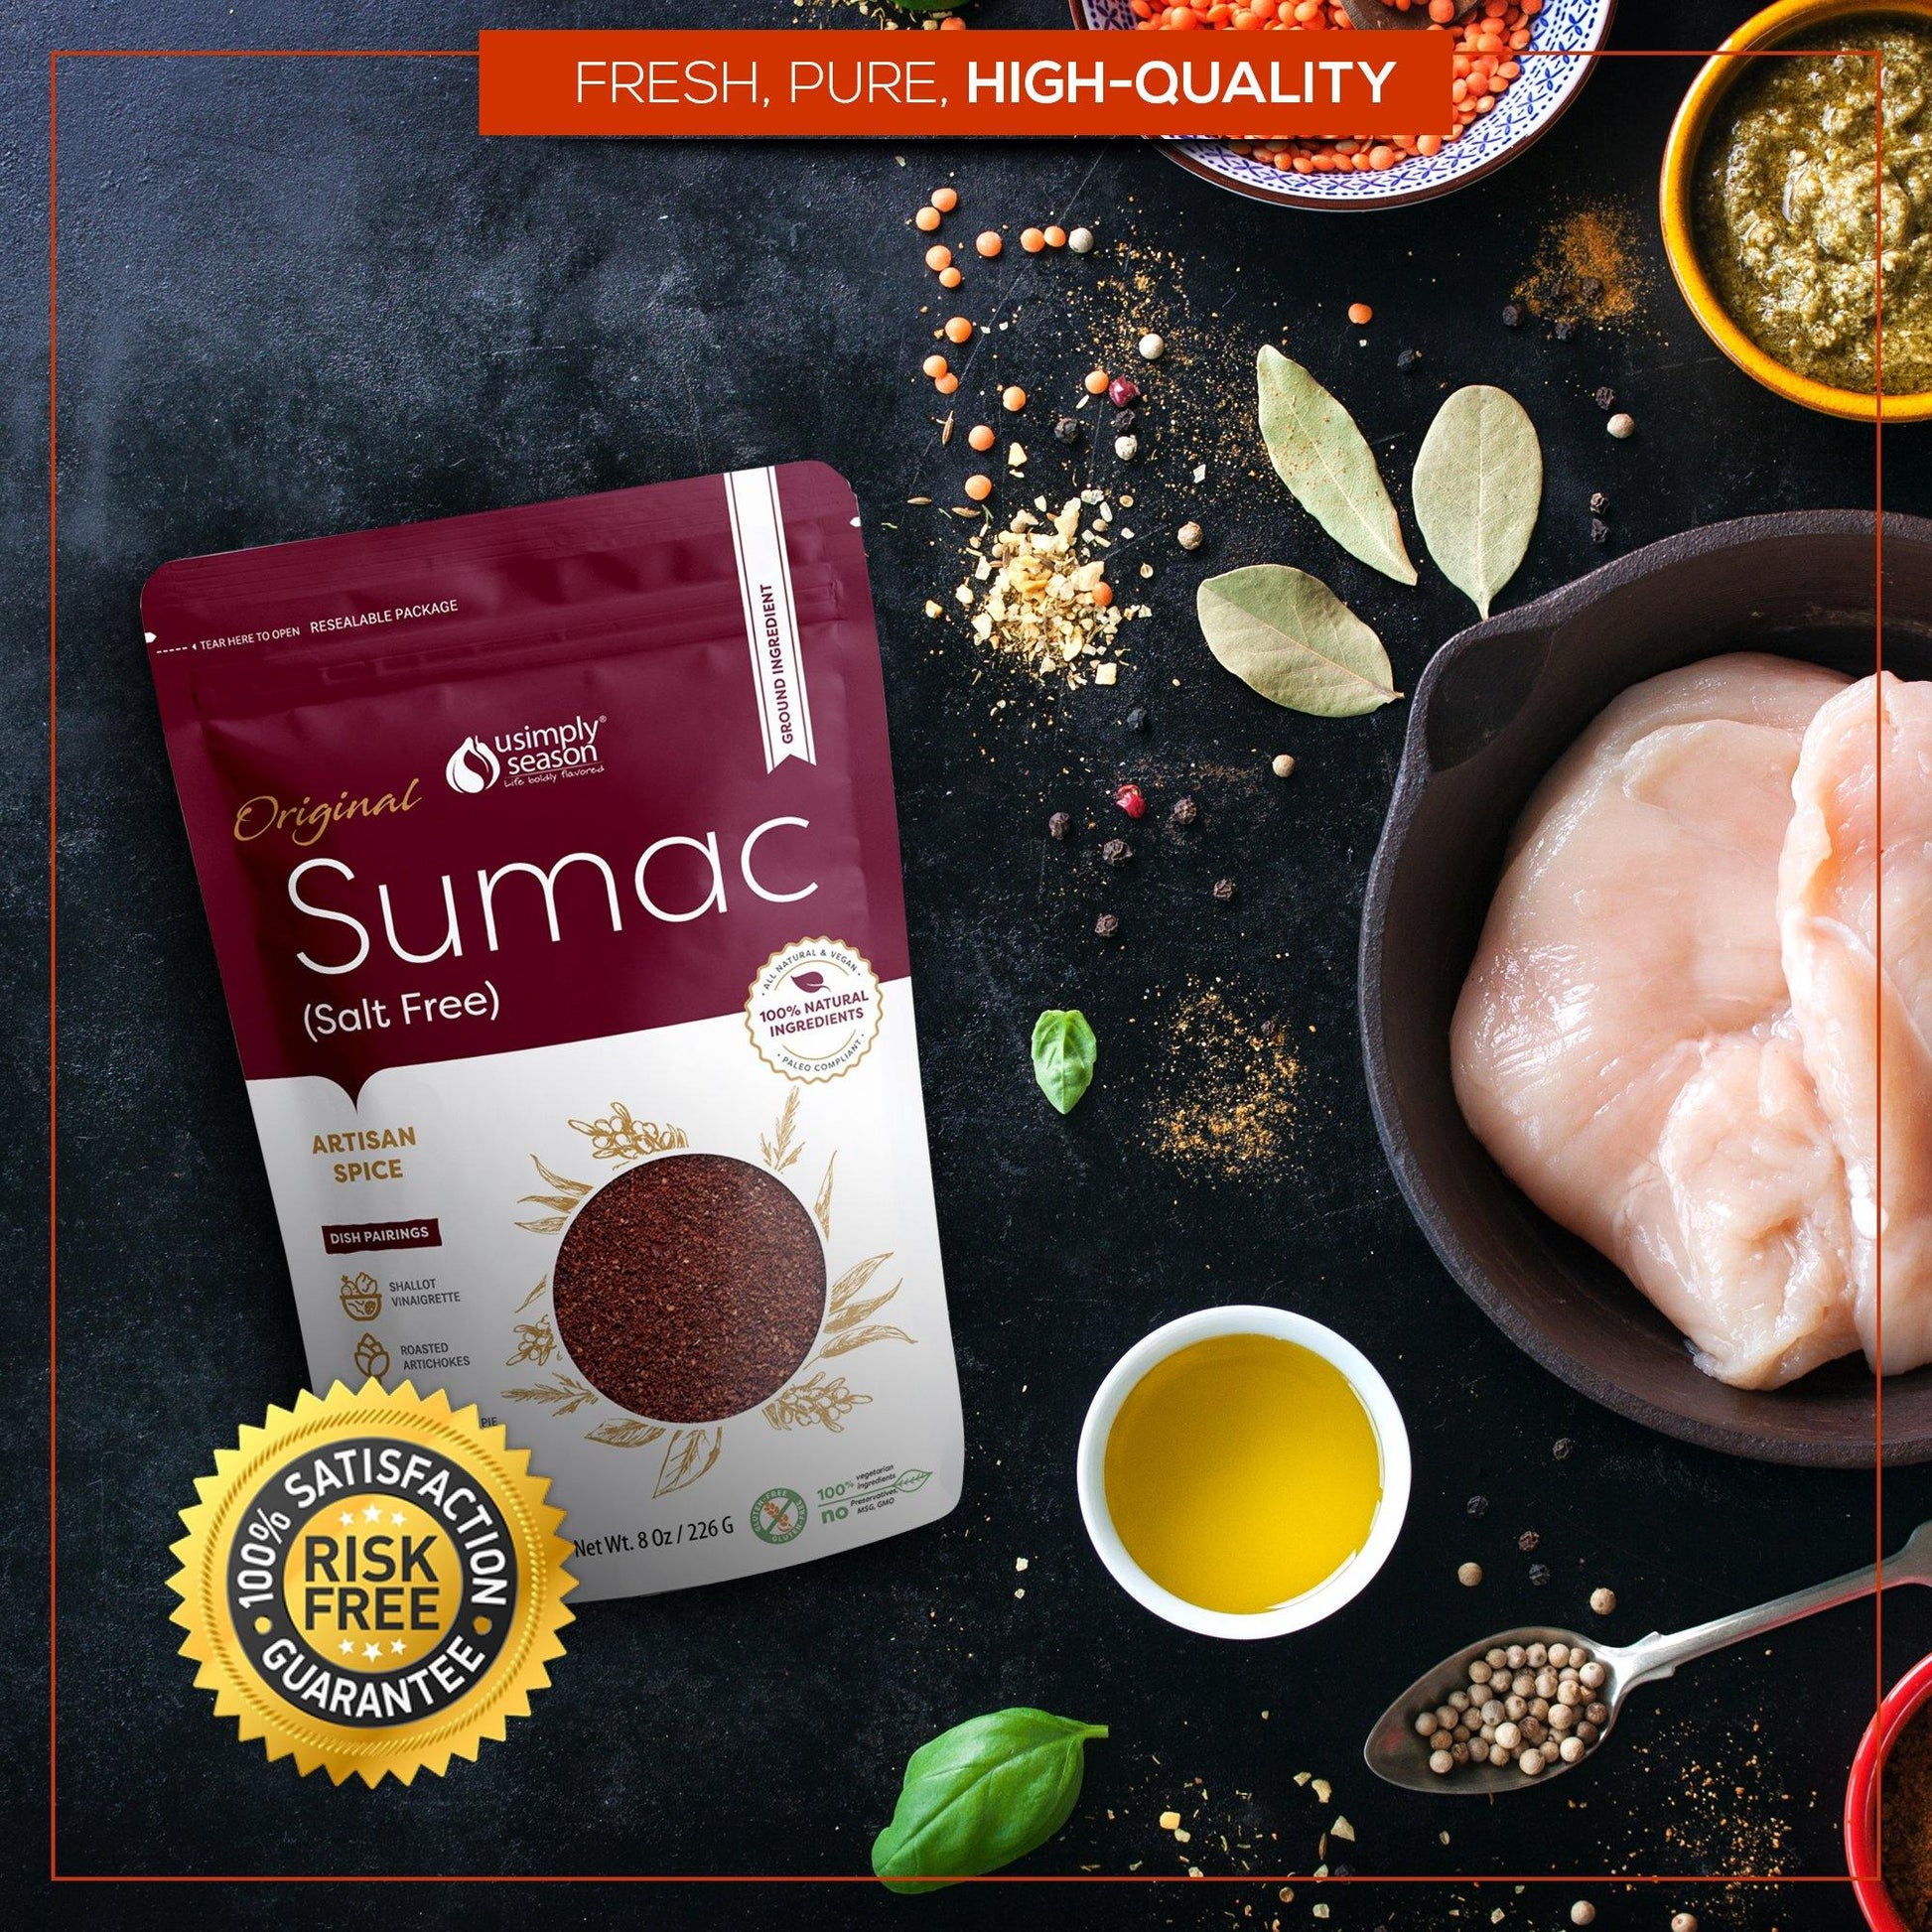 Sumac: A Uniquely Versatile Spice